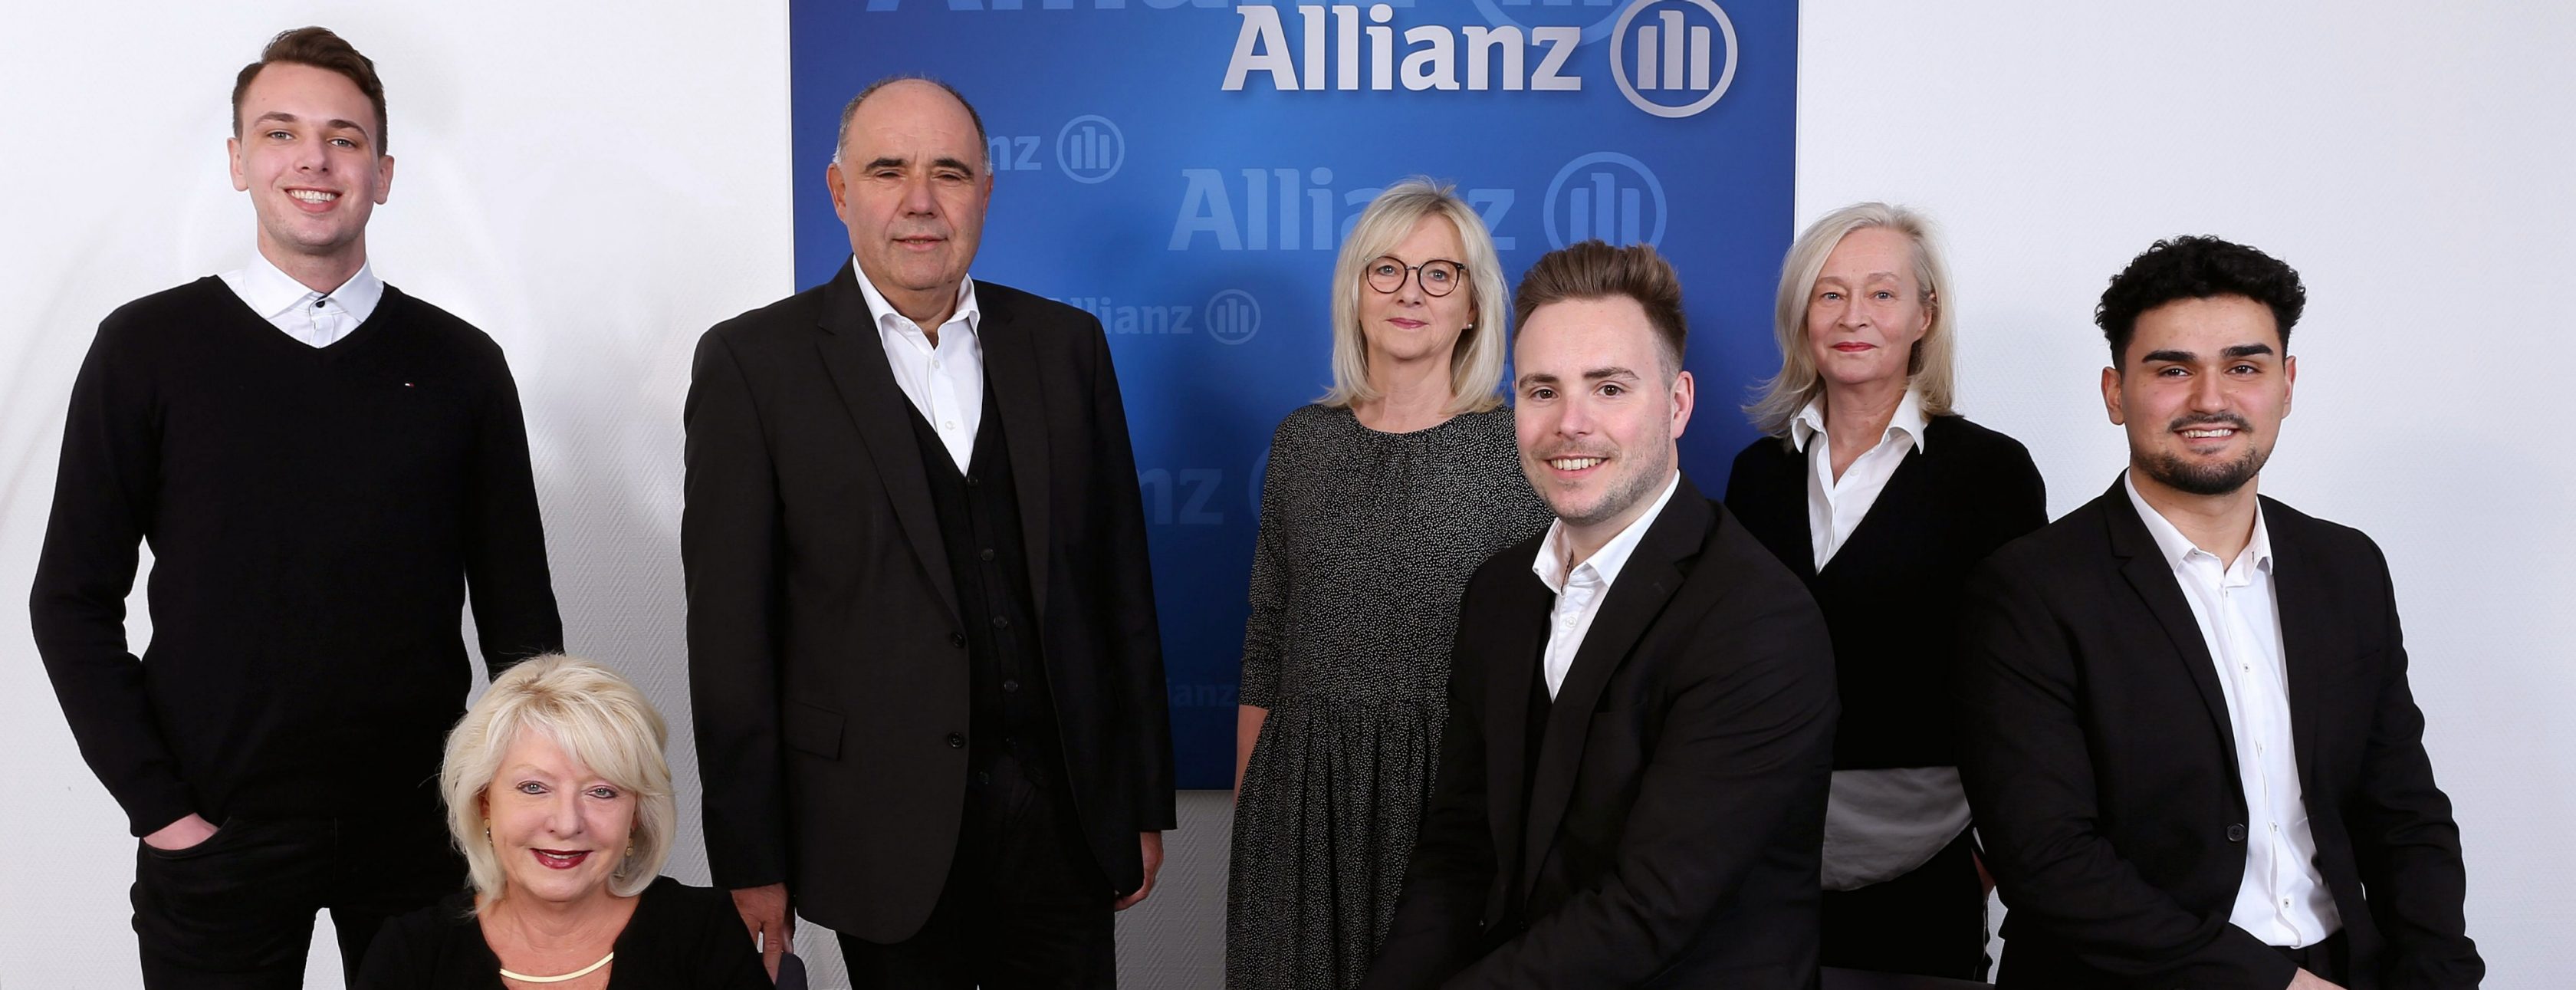 Allianz Versicherung Alexander Heck Düsseldorf - Unser Team im Überblick